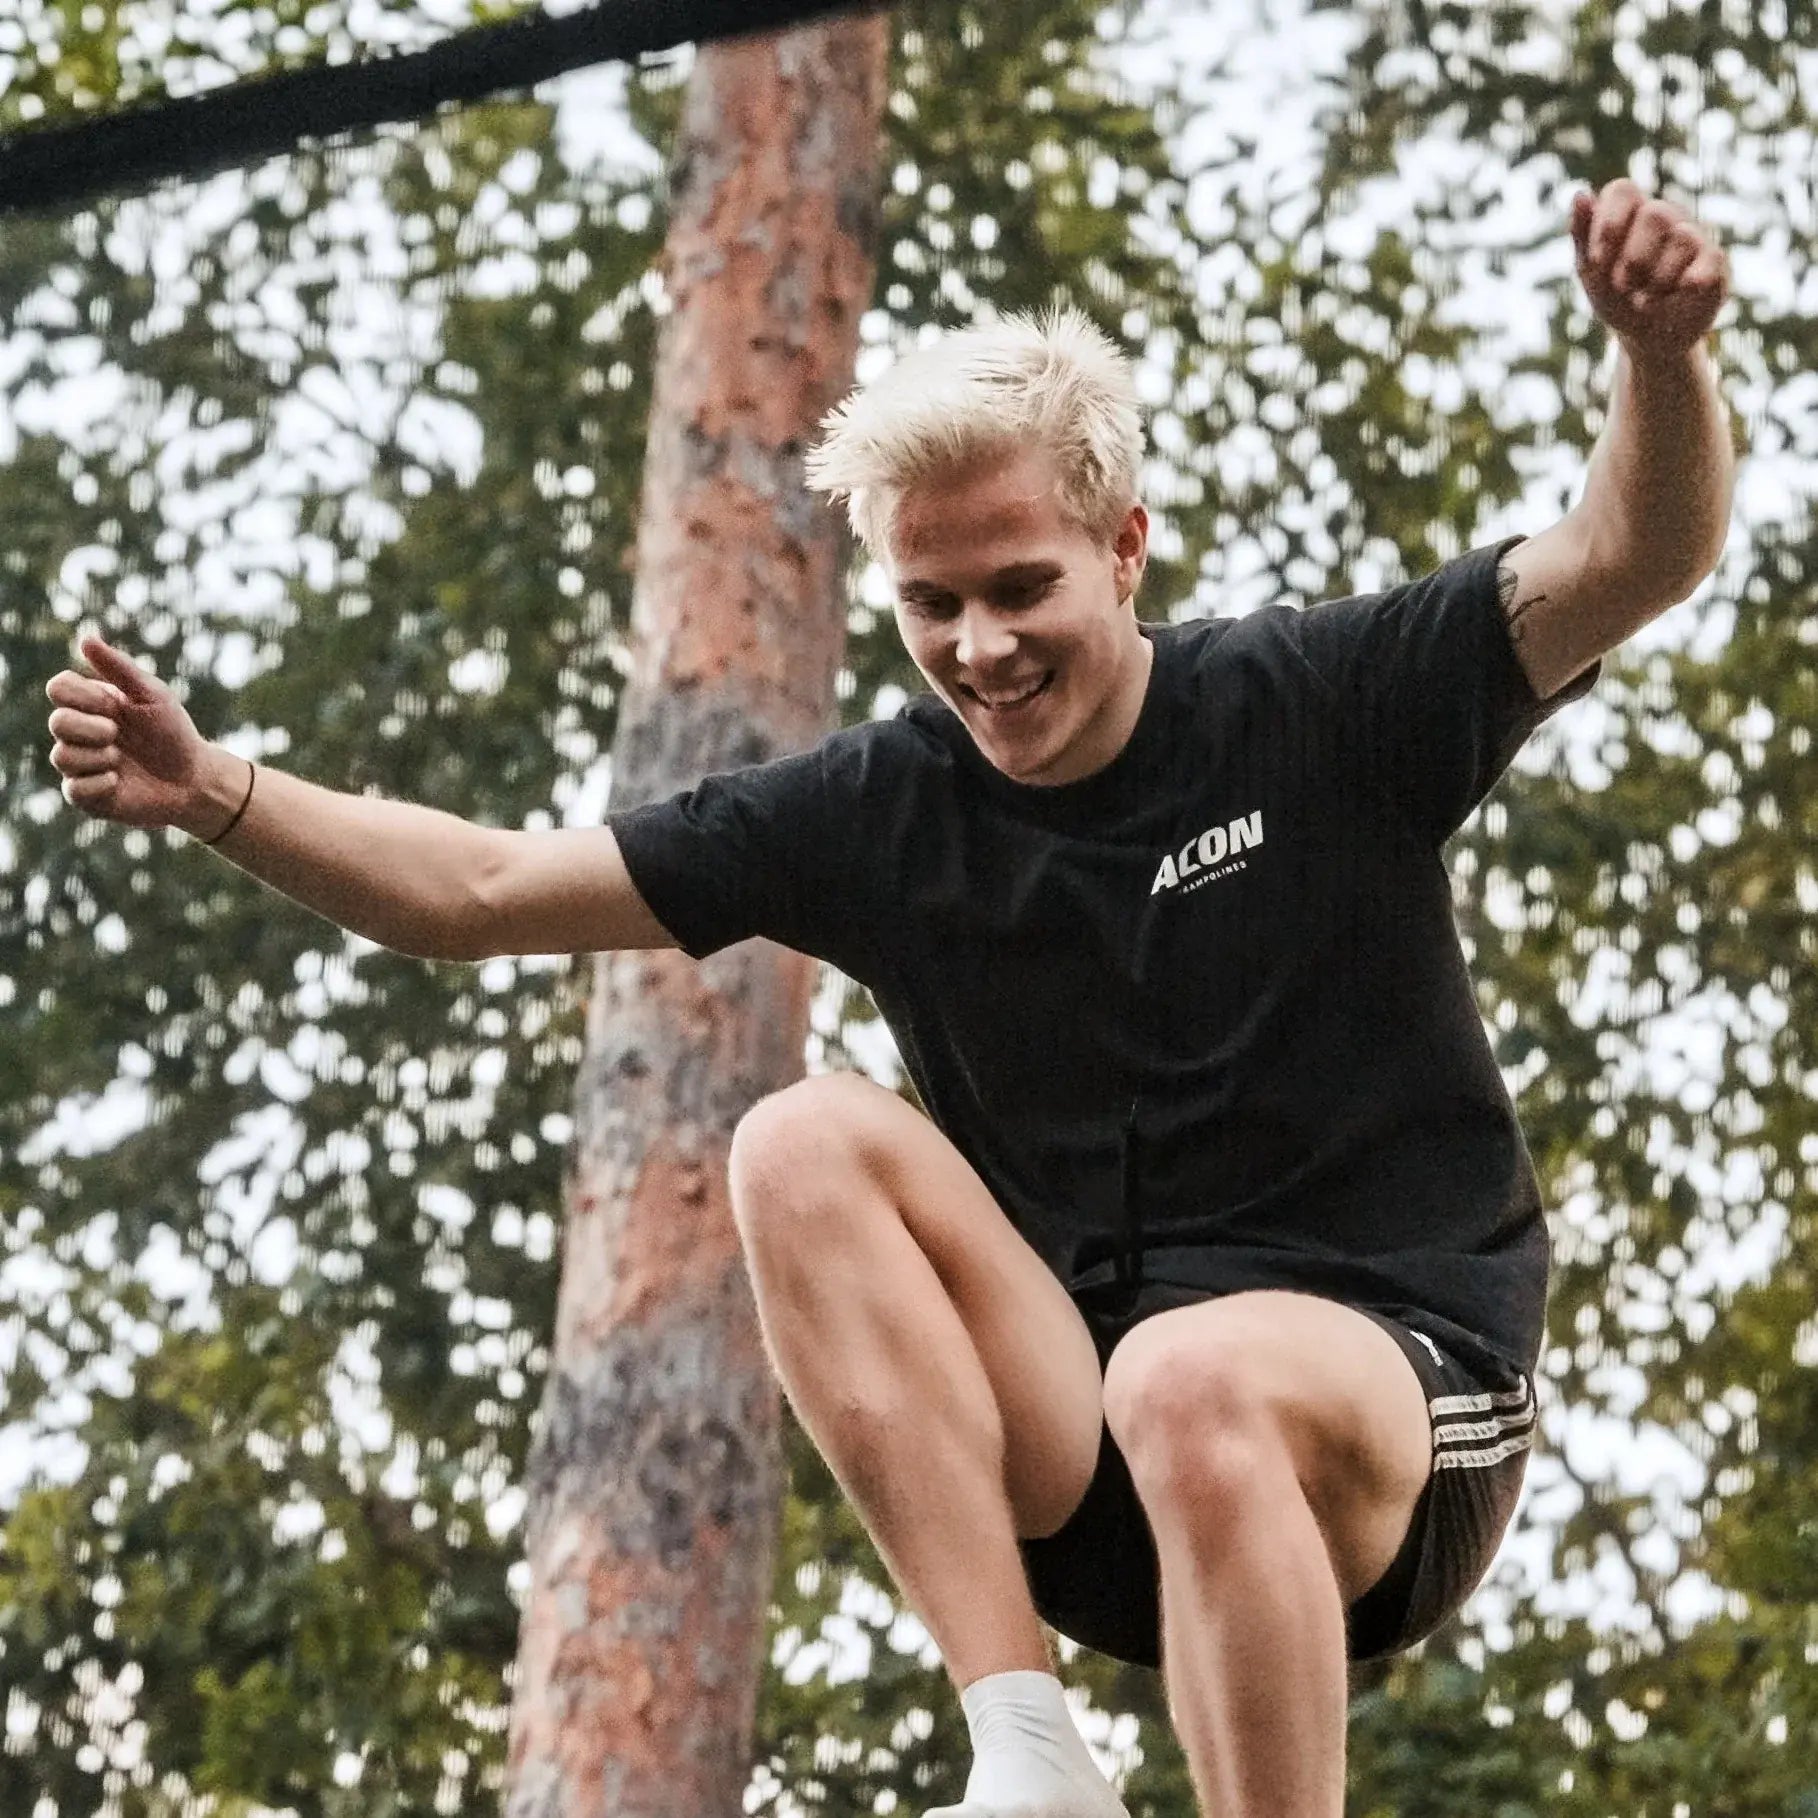 Aleksi Sainio jumps on the Acon X Trampoline.